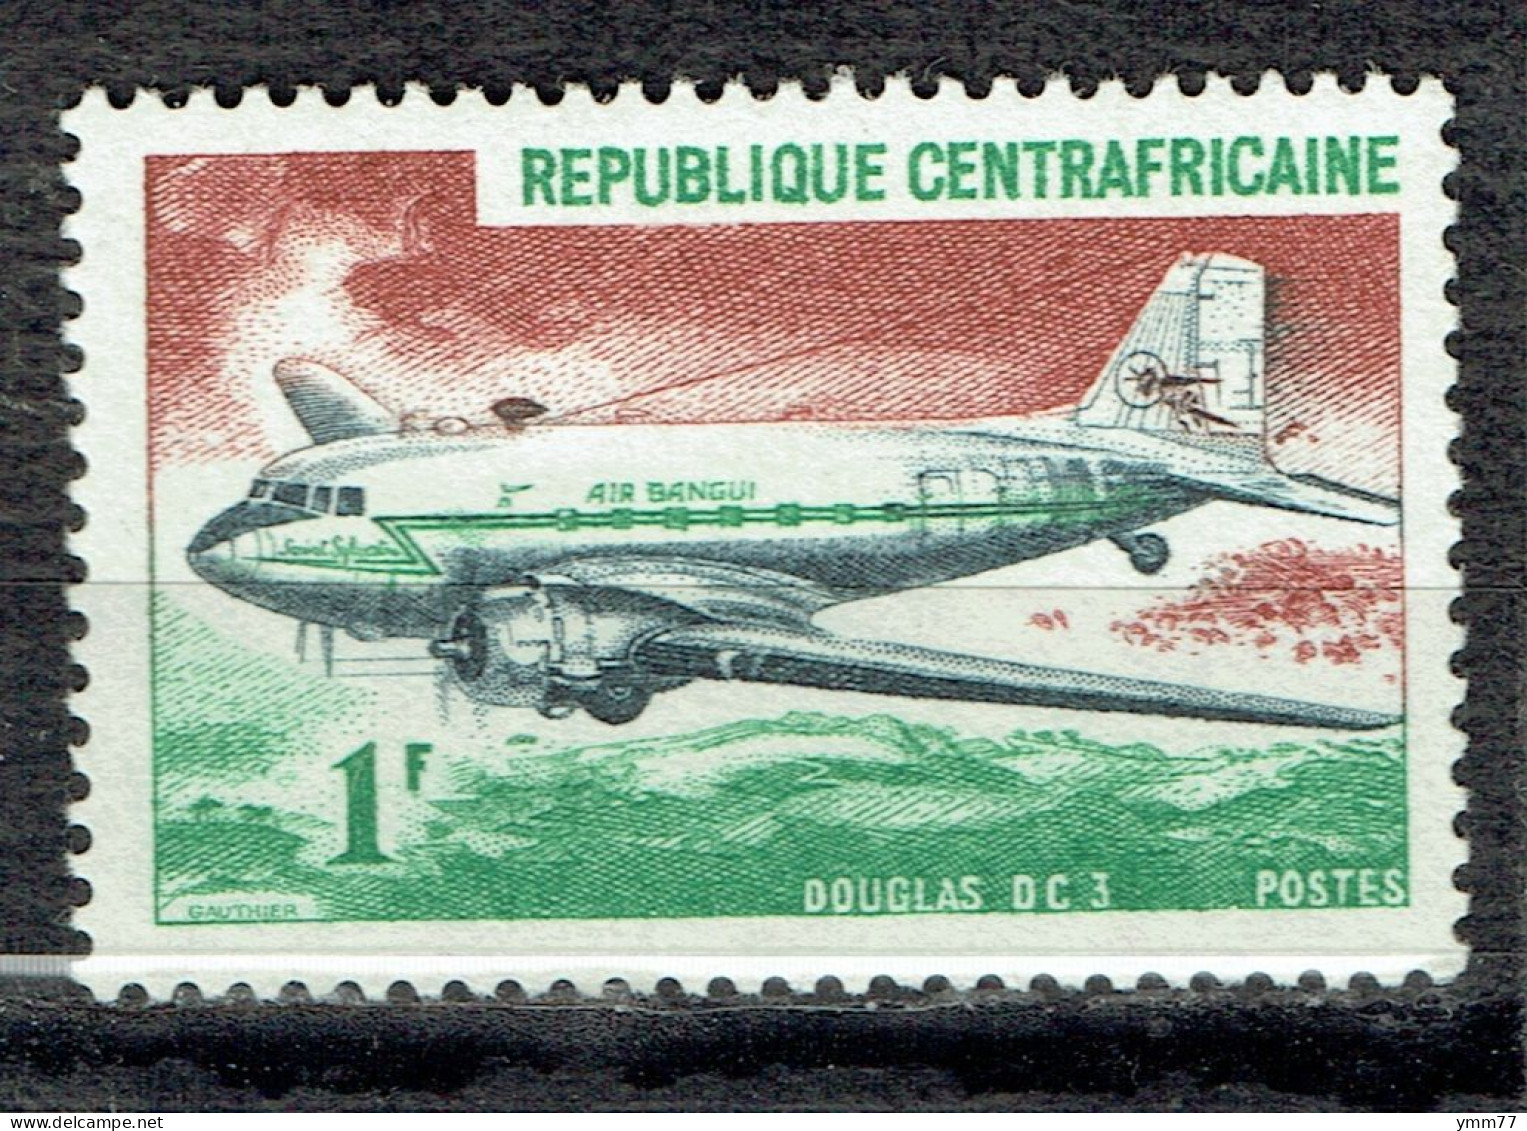 Avion : Douglas DC-3 - Centrafricaine (République)